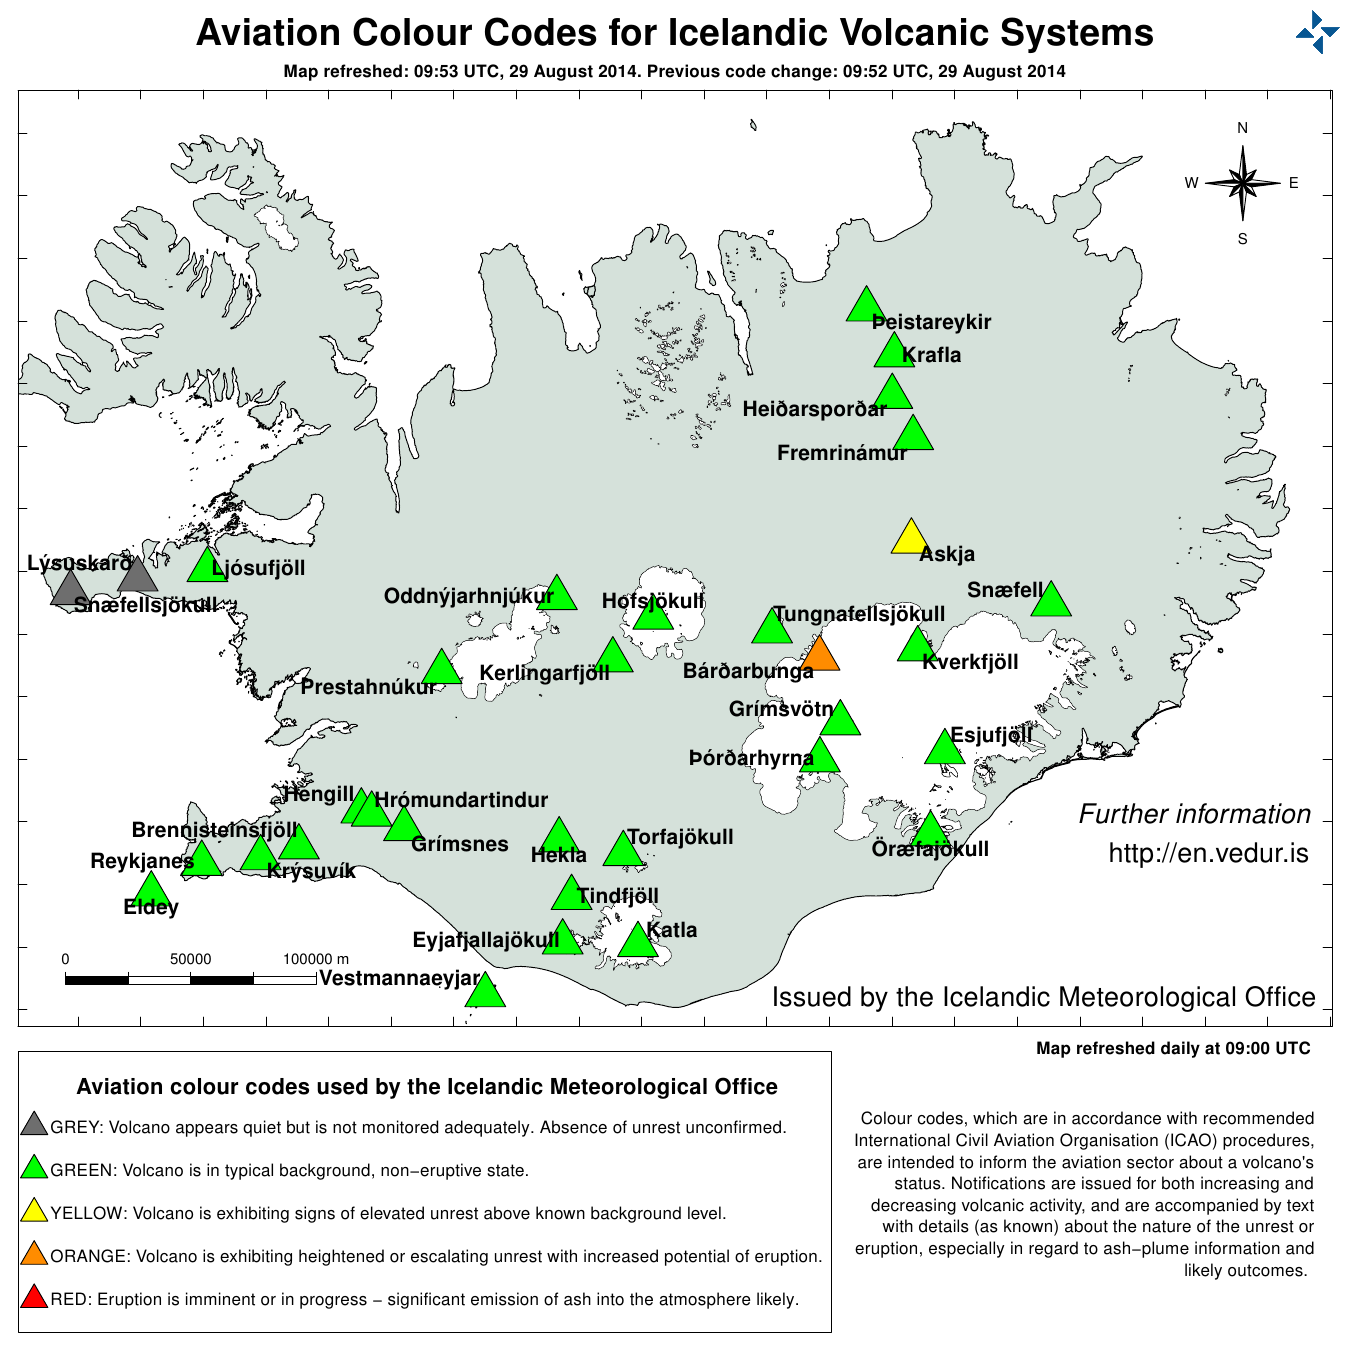 冰島當局公告燈號仍為橘燈